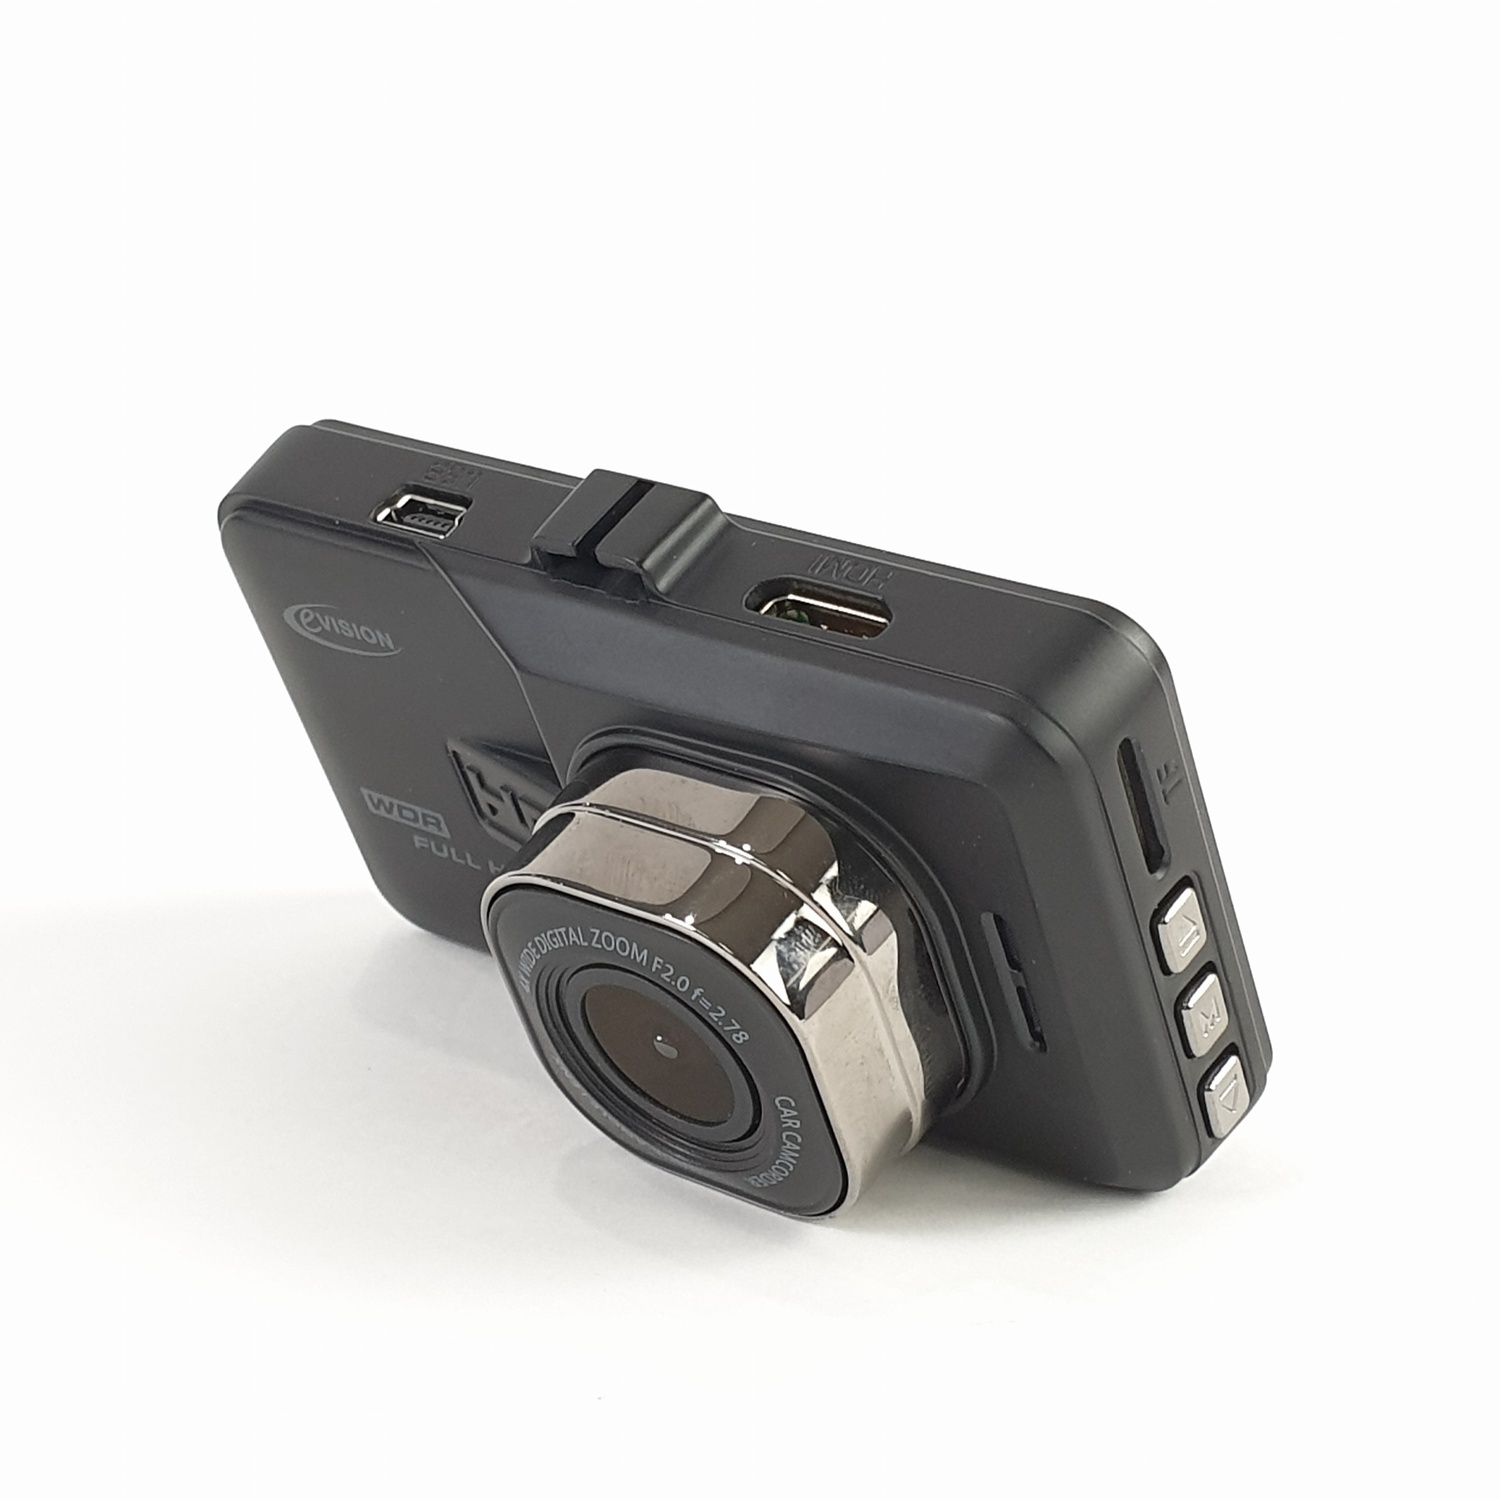 EVISION กล้องติดรถยนต์(กล้องหน้าและหลัง) รุ่น CD-060R (3นิ้ว) ขนาด 8.70x3.35x5.30cm สีดำ